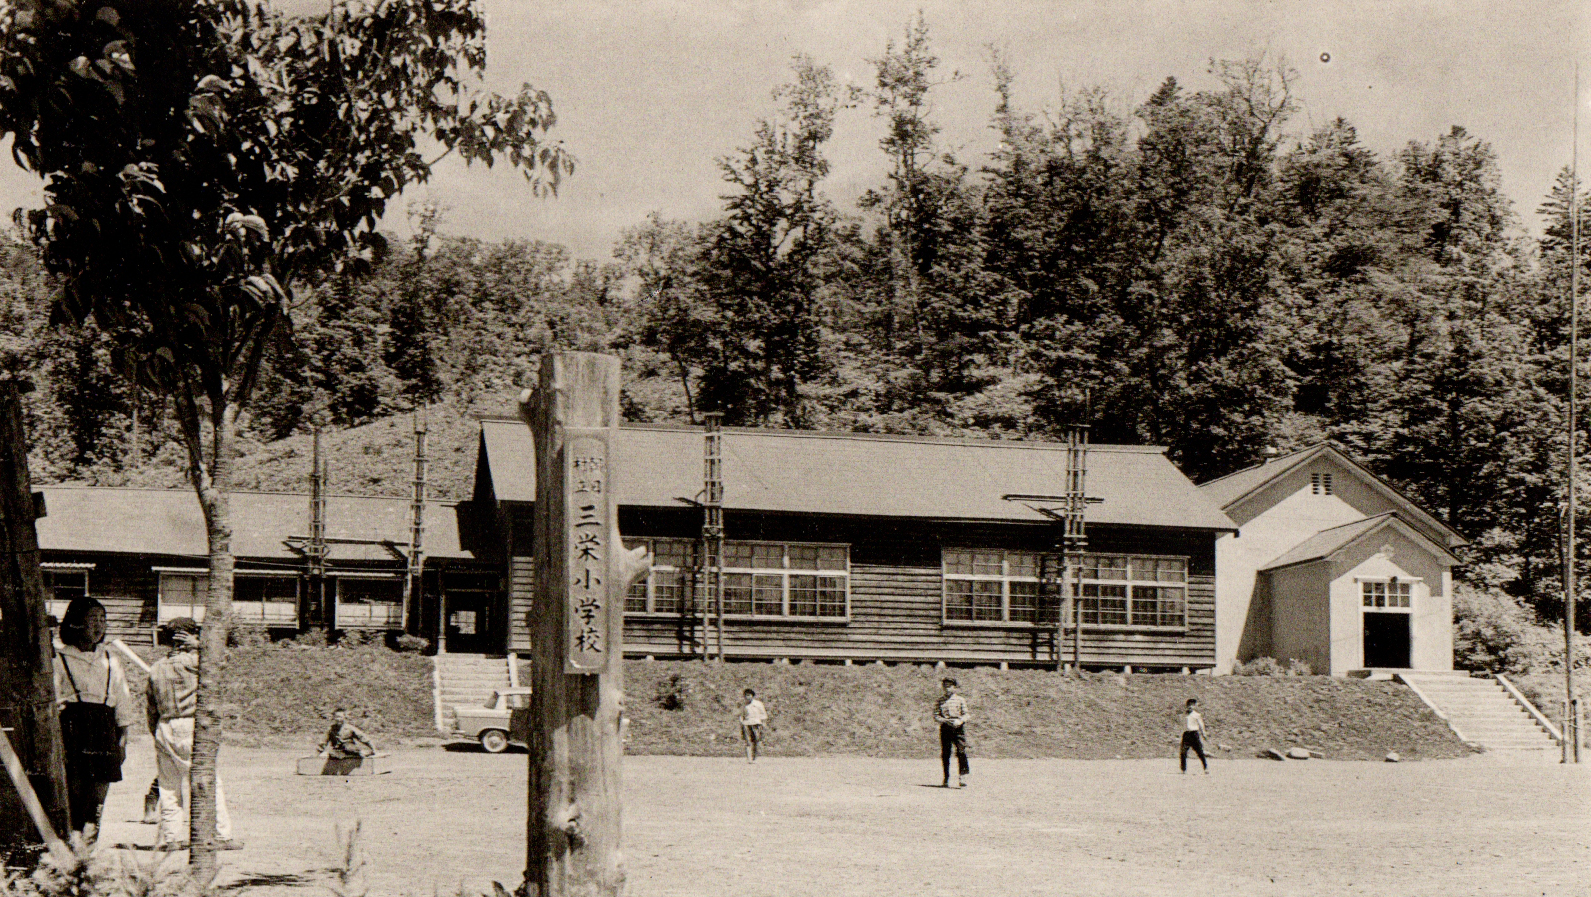 手前の運動場で児童が野球をしている奥の階段を上がった場所に建てられた昭和37年頃の旧三栄小学校校舎の白黒写真